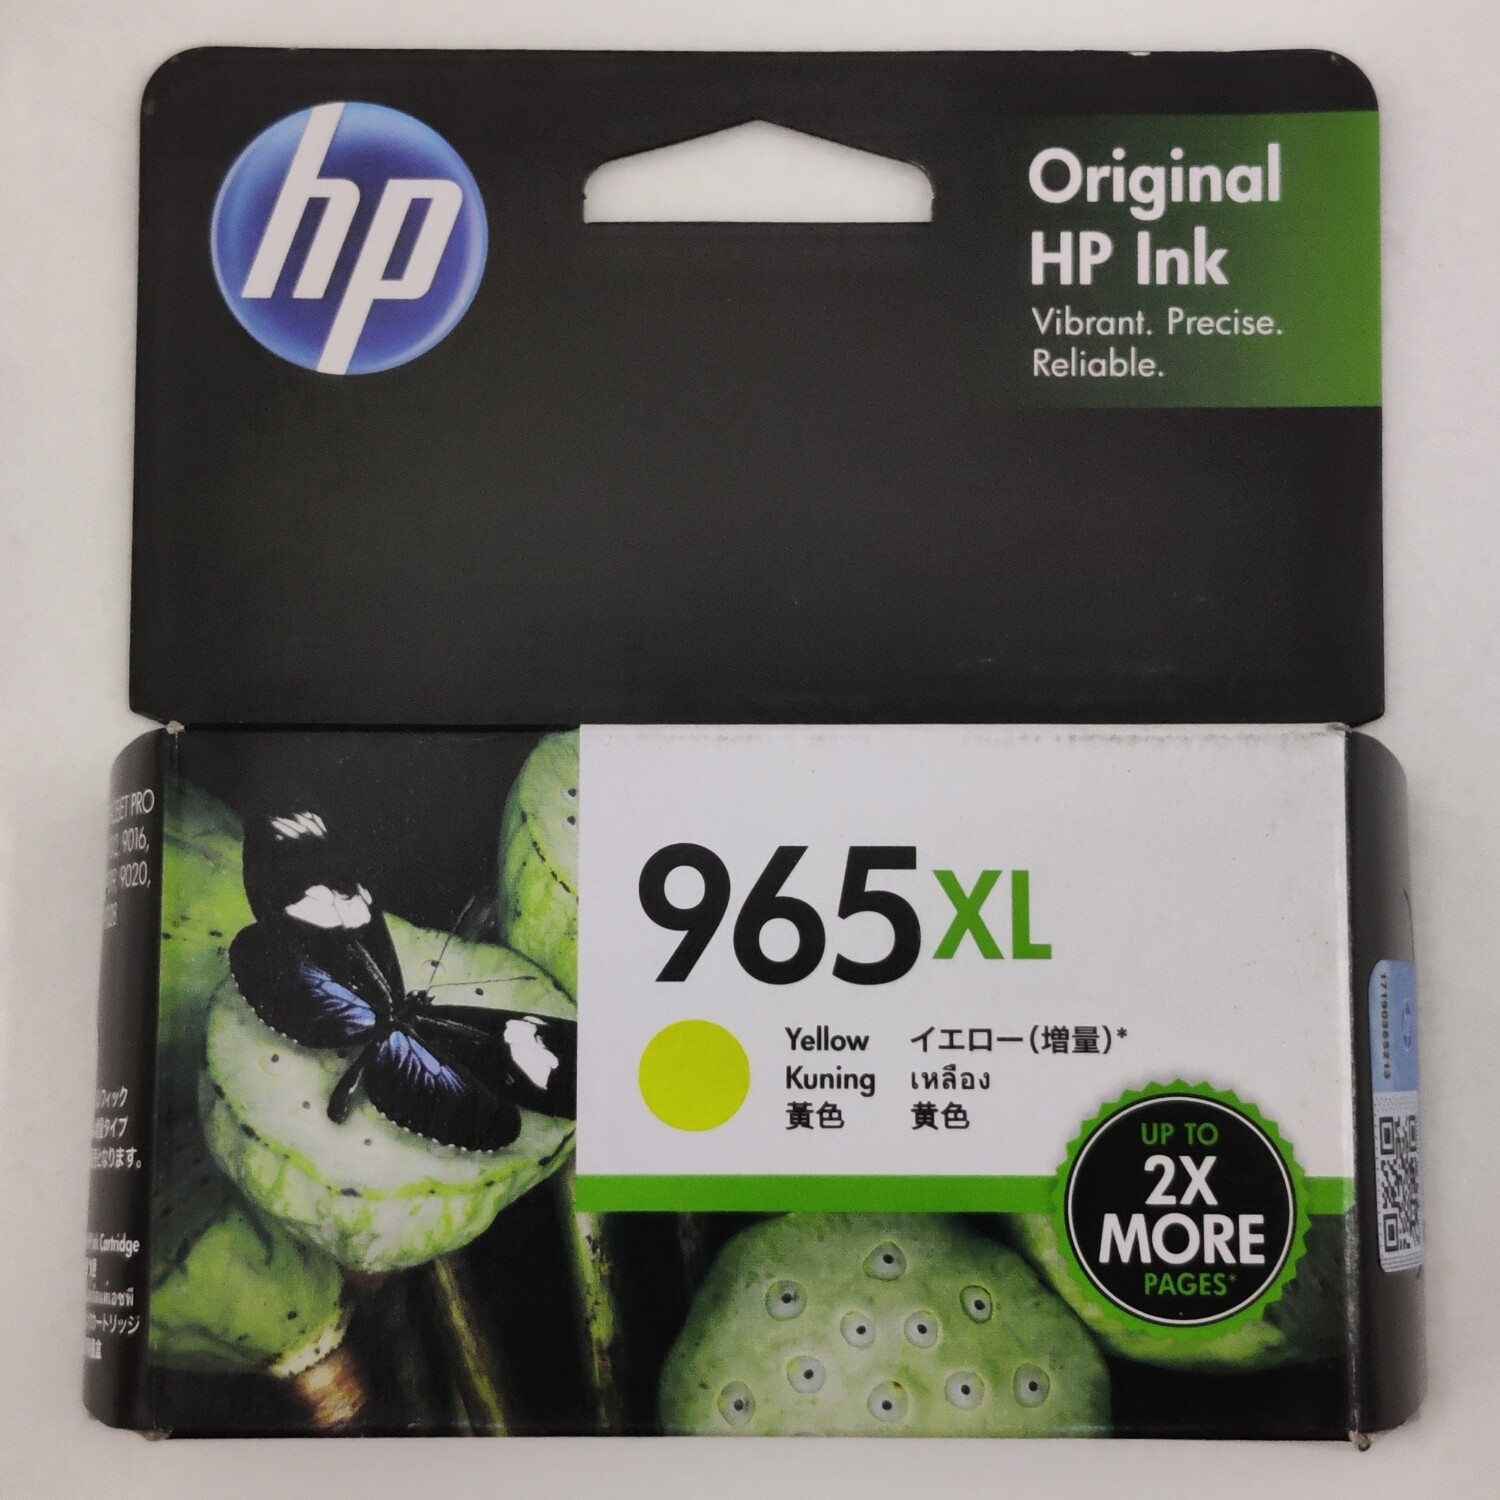 HP Officejet 965XL Yellow Ink Cartridge